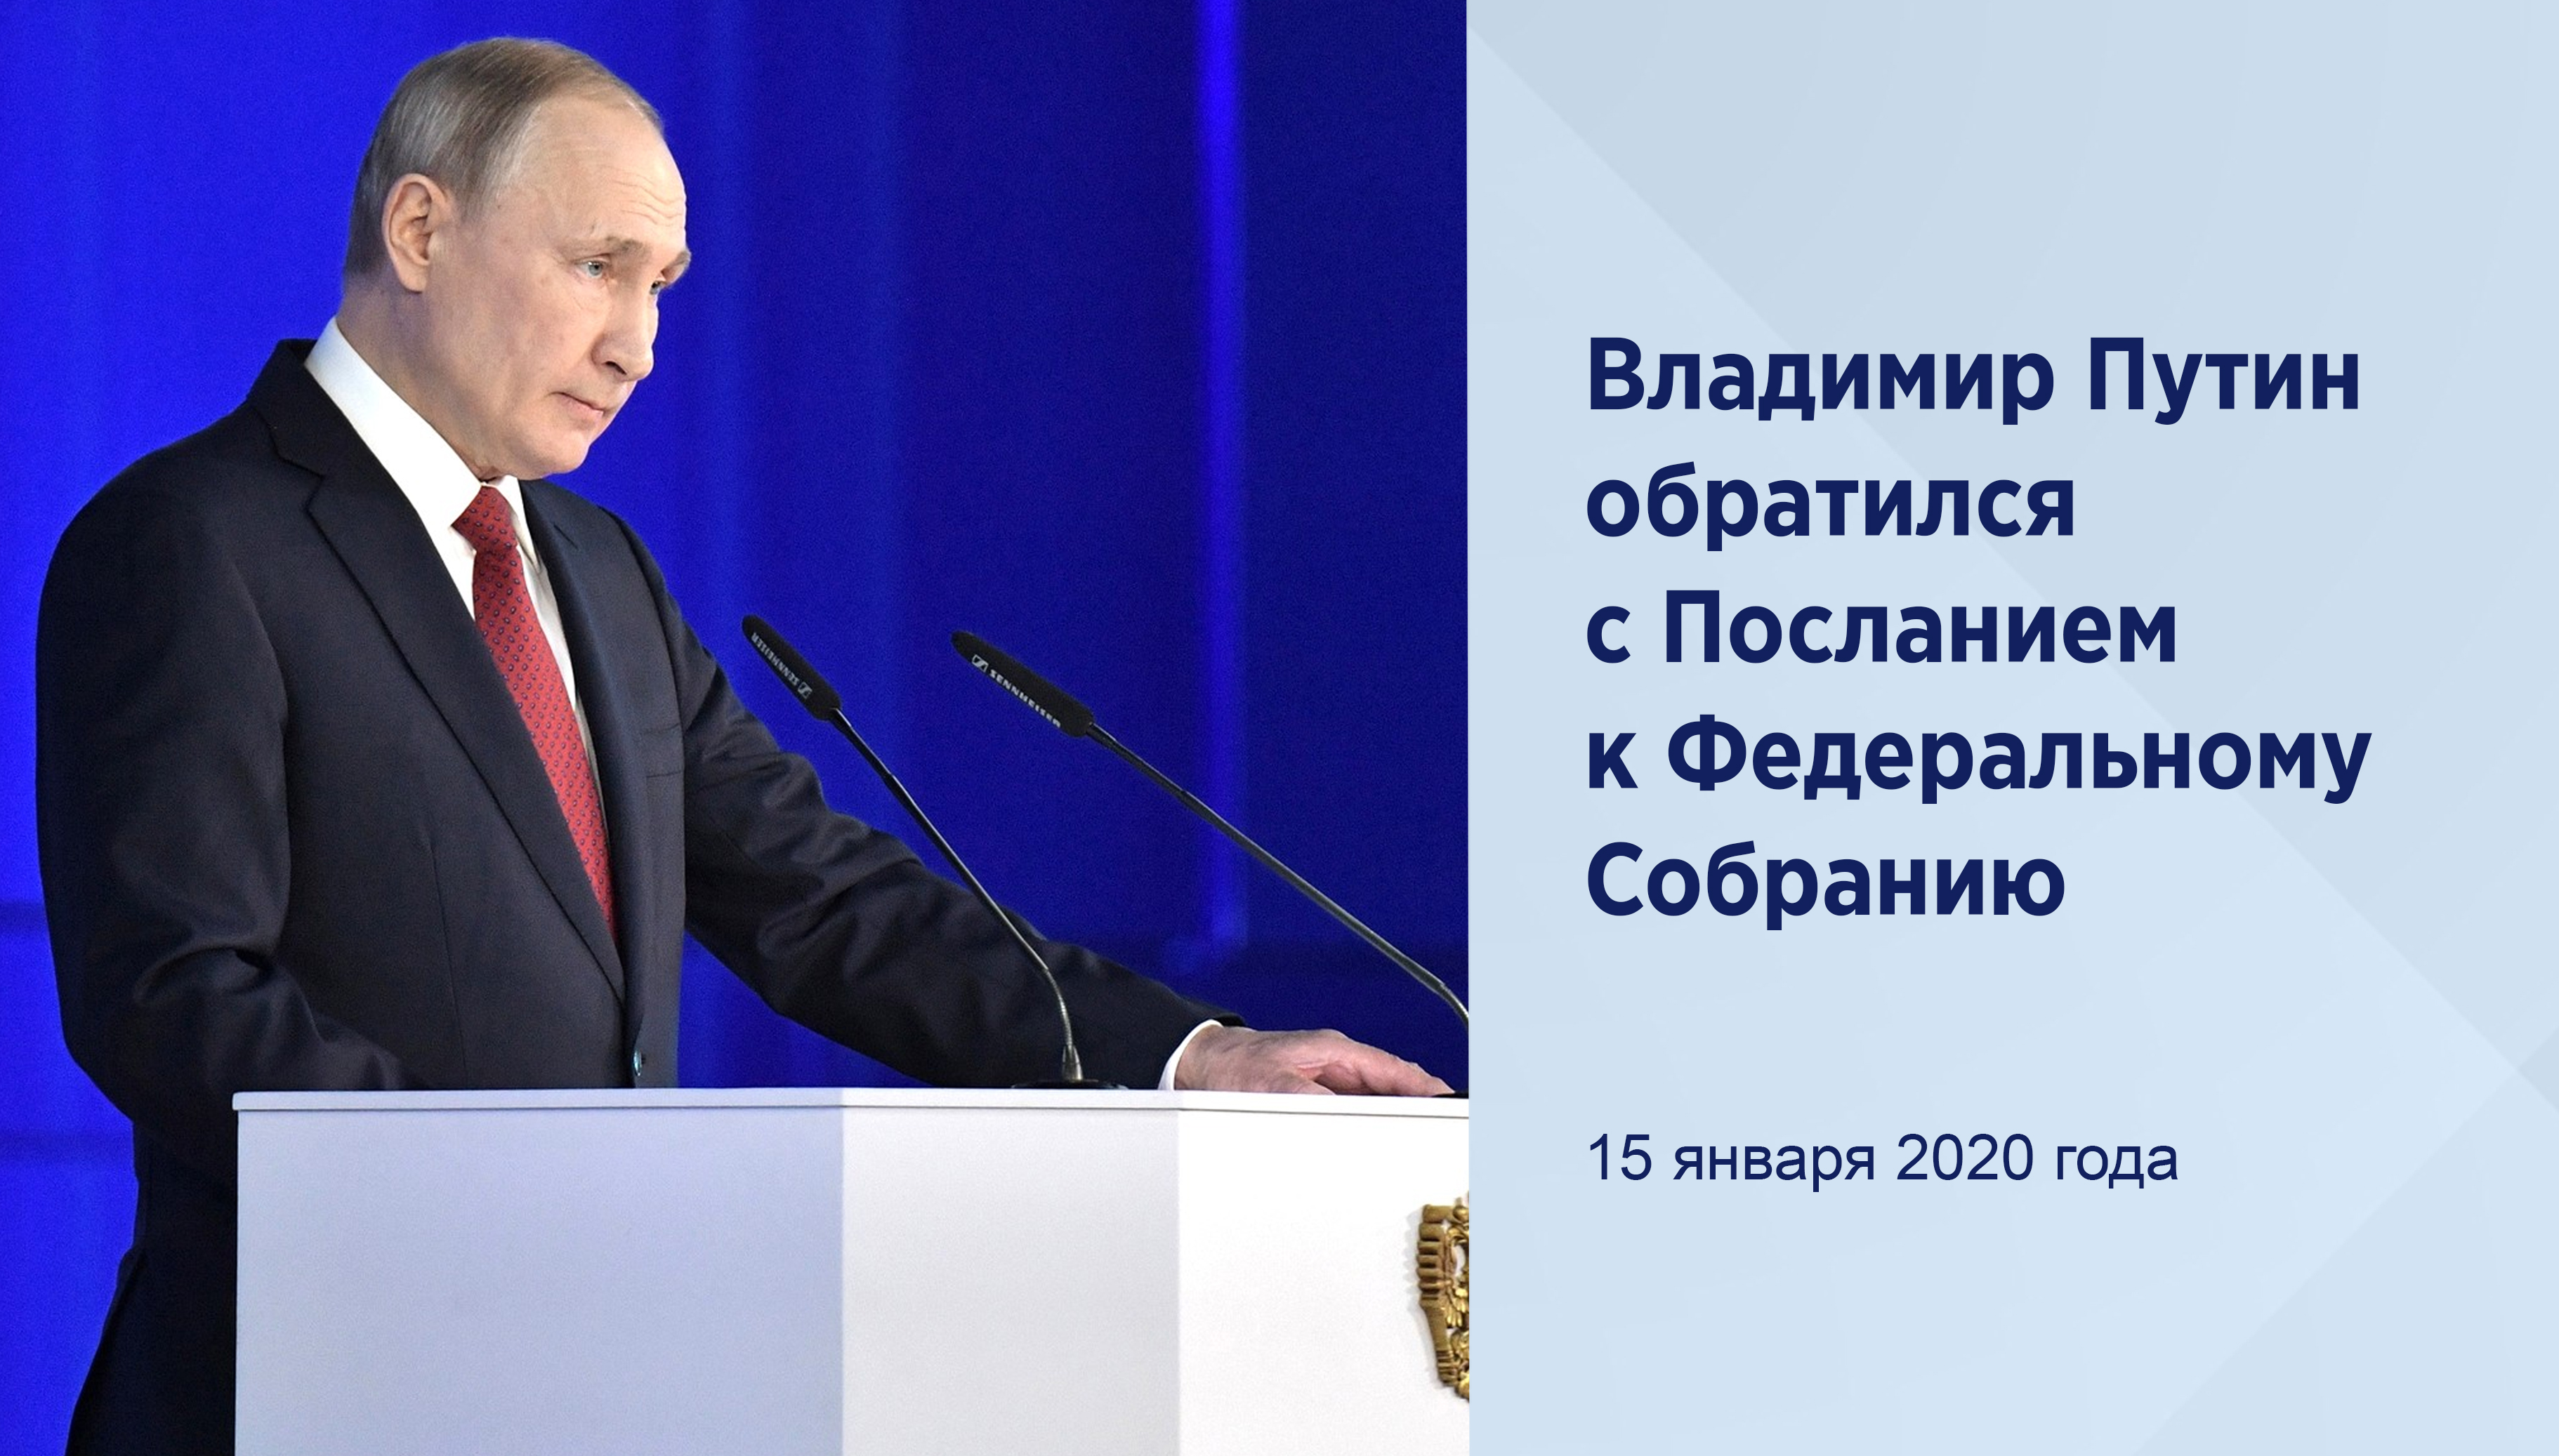 Владимир Путин обратился с
Посланием к Федеральному Собранию